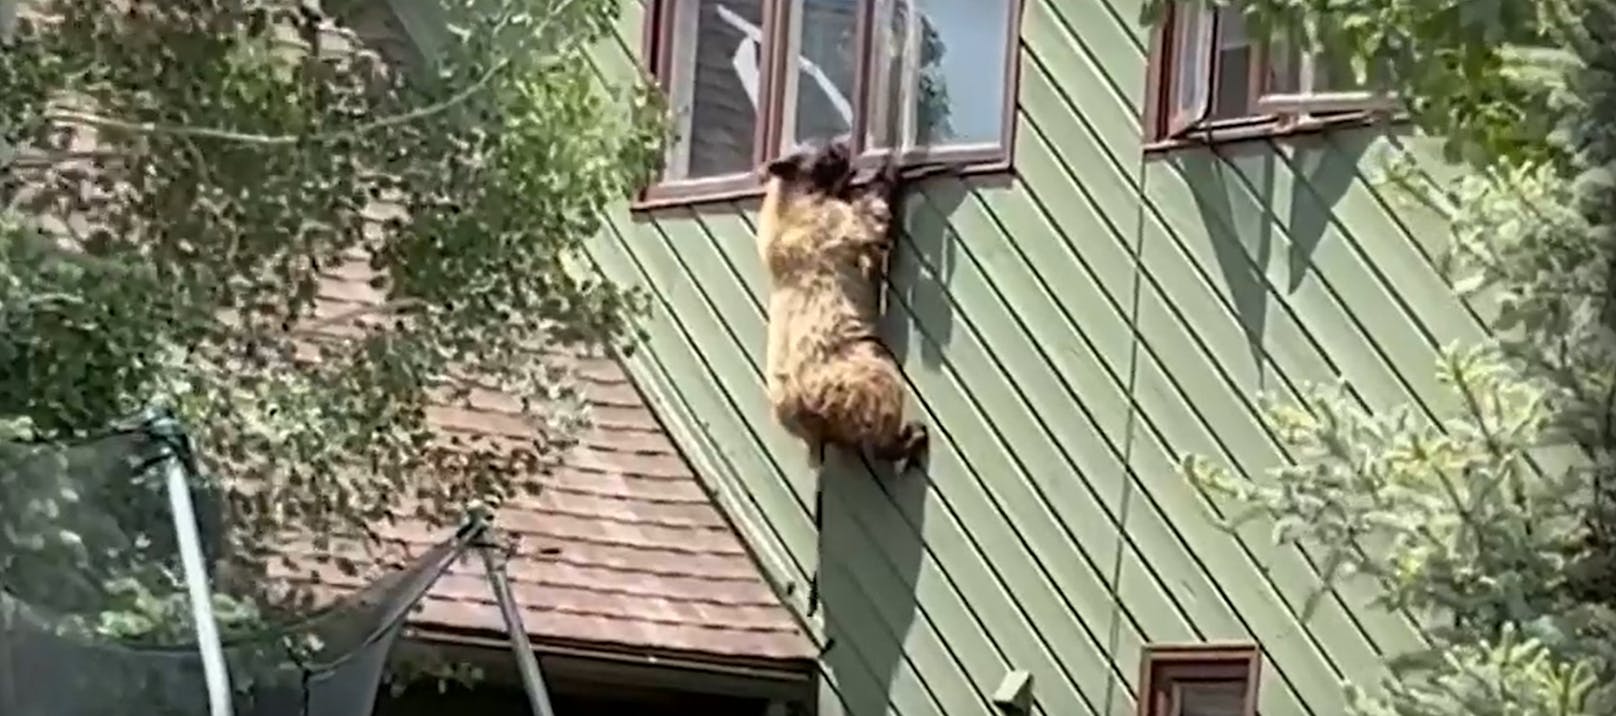 Nach Einbruch – Bär baumelt aus Fenster im ersten Stock